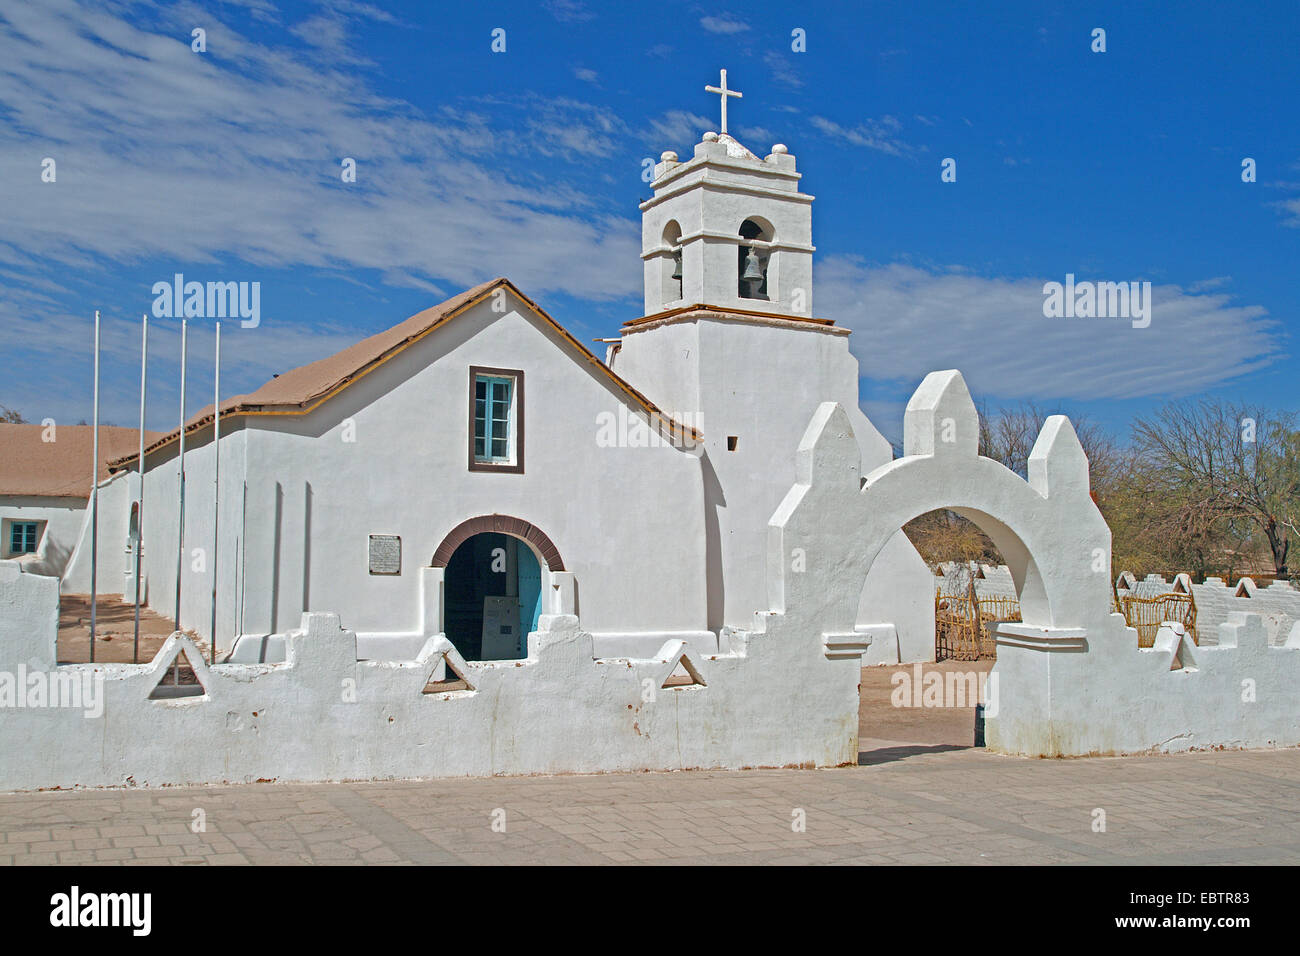 Church of san pedro de atacama hi-res stock photography and images - Alamy